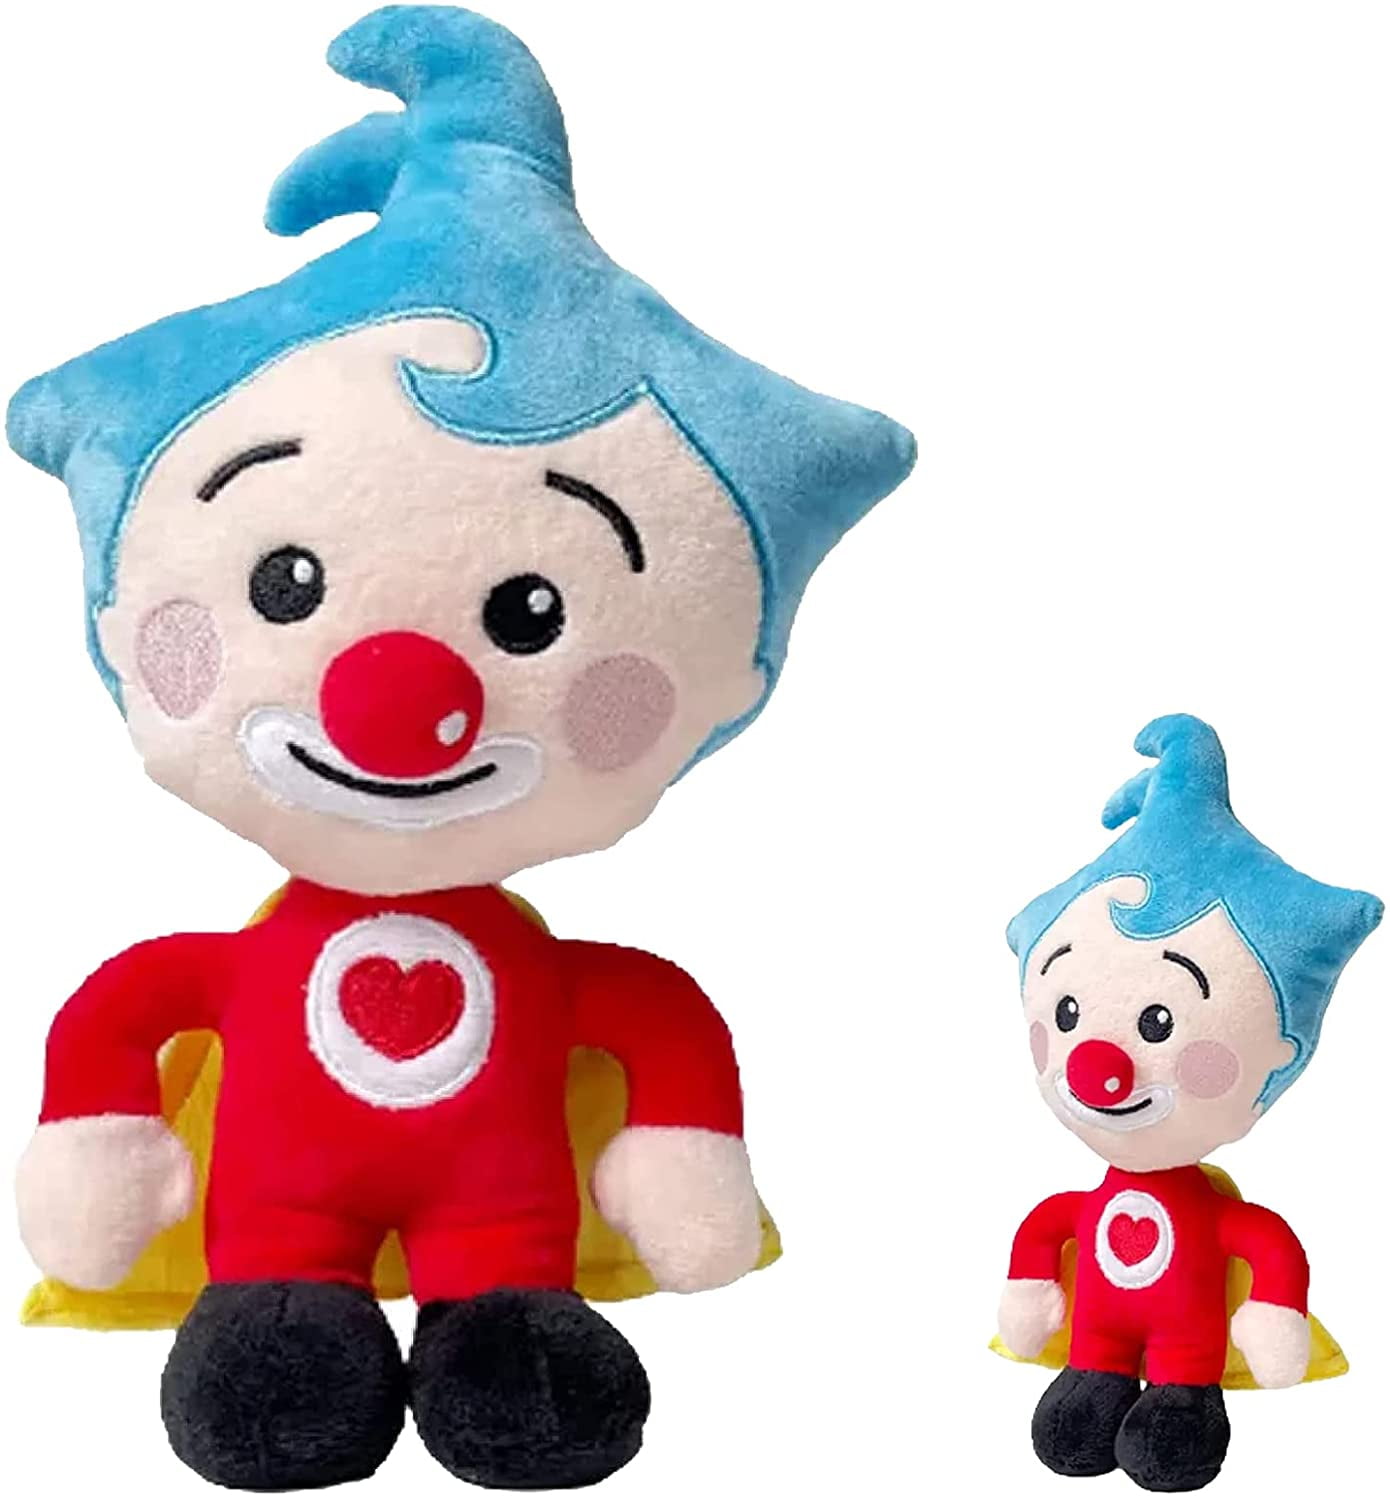 7.8in Plim Plim Plush Clown,Cartoon Animation Stuffed Clown Doll Toy for  Child's Progress Reward Cute